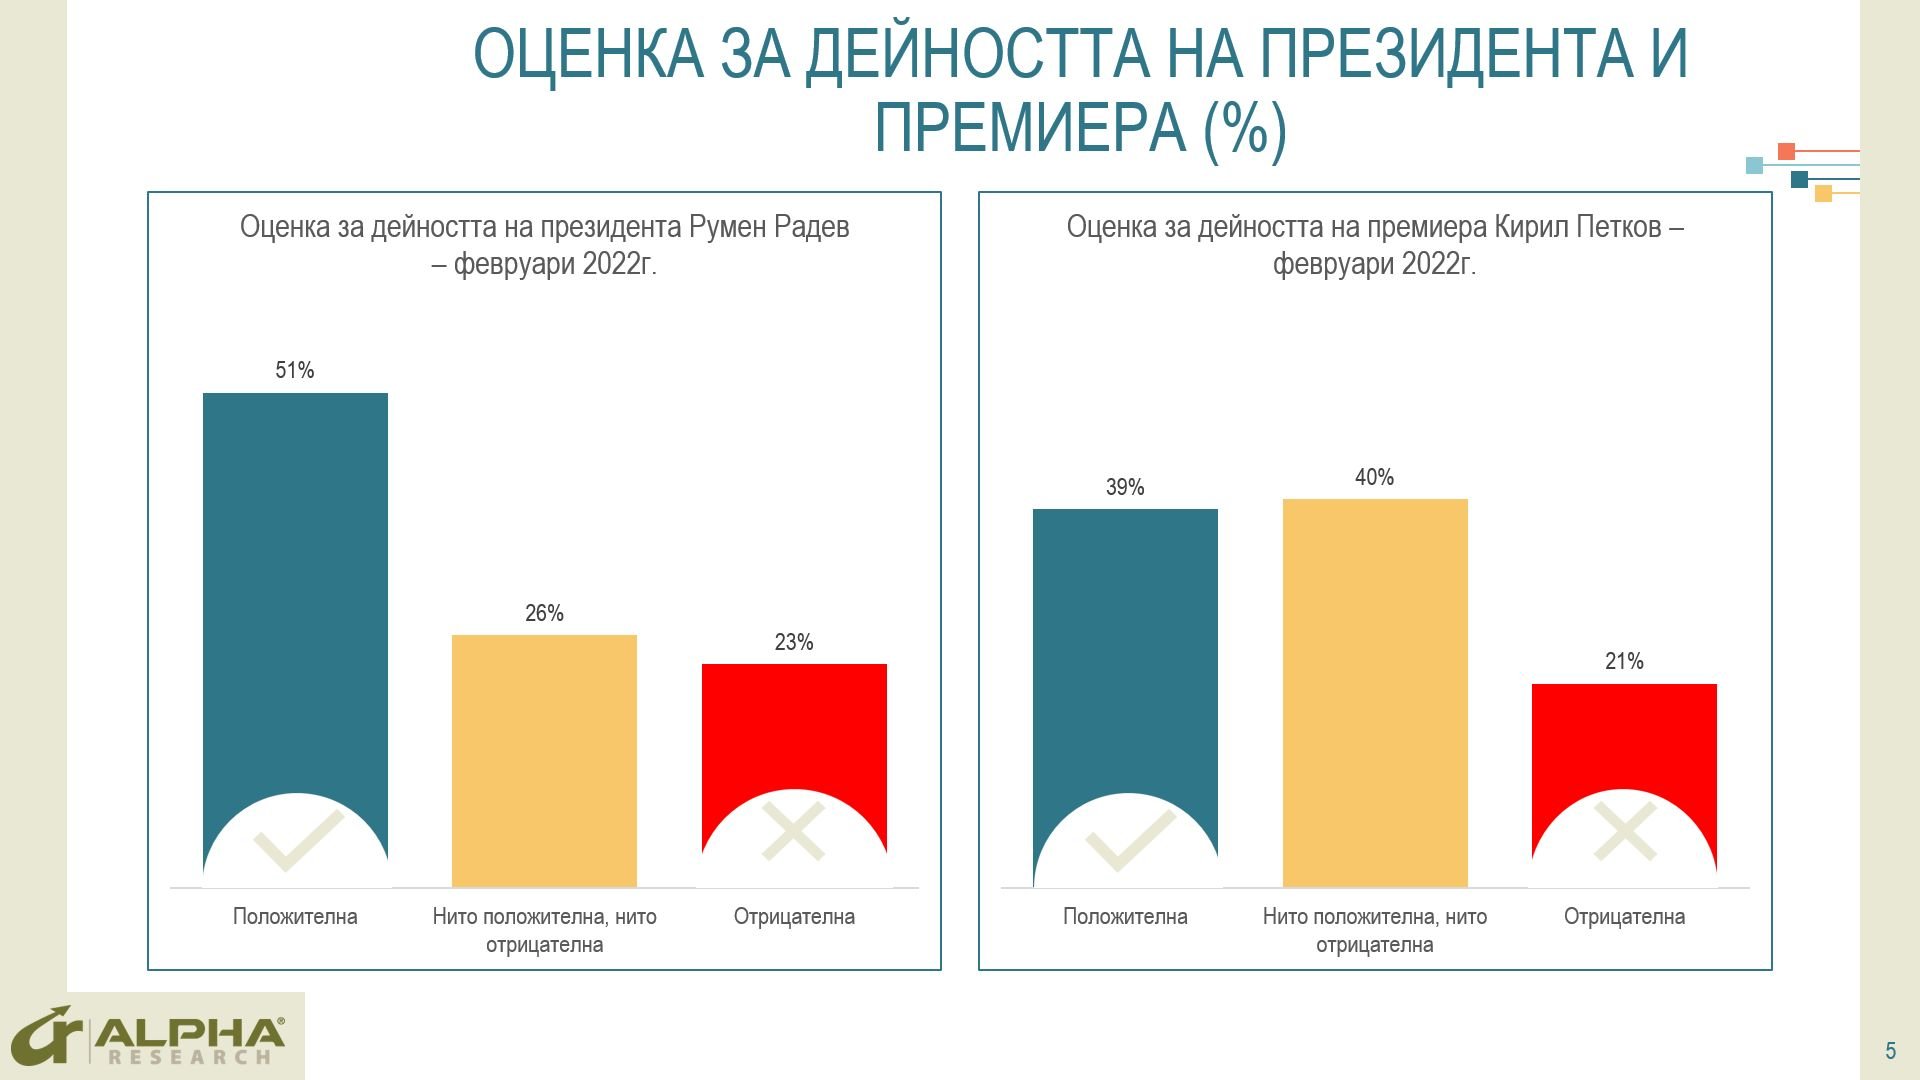 Кабинетът Петков“ стартира с 35% положителни срещу 23% отрицателни оценки